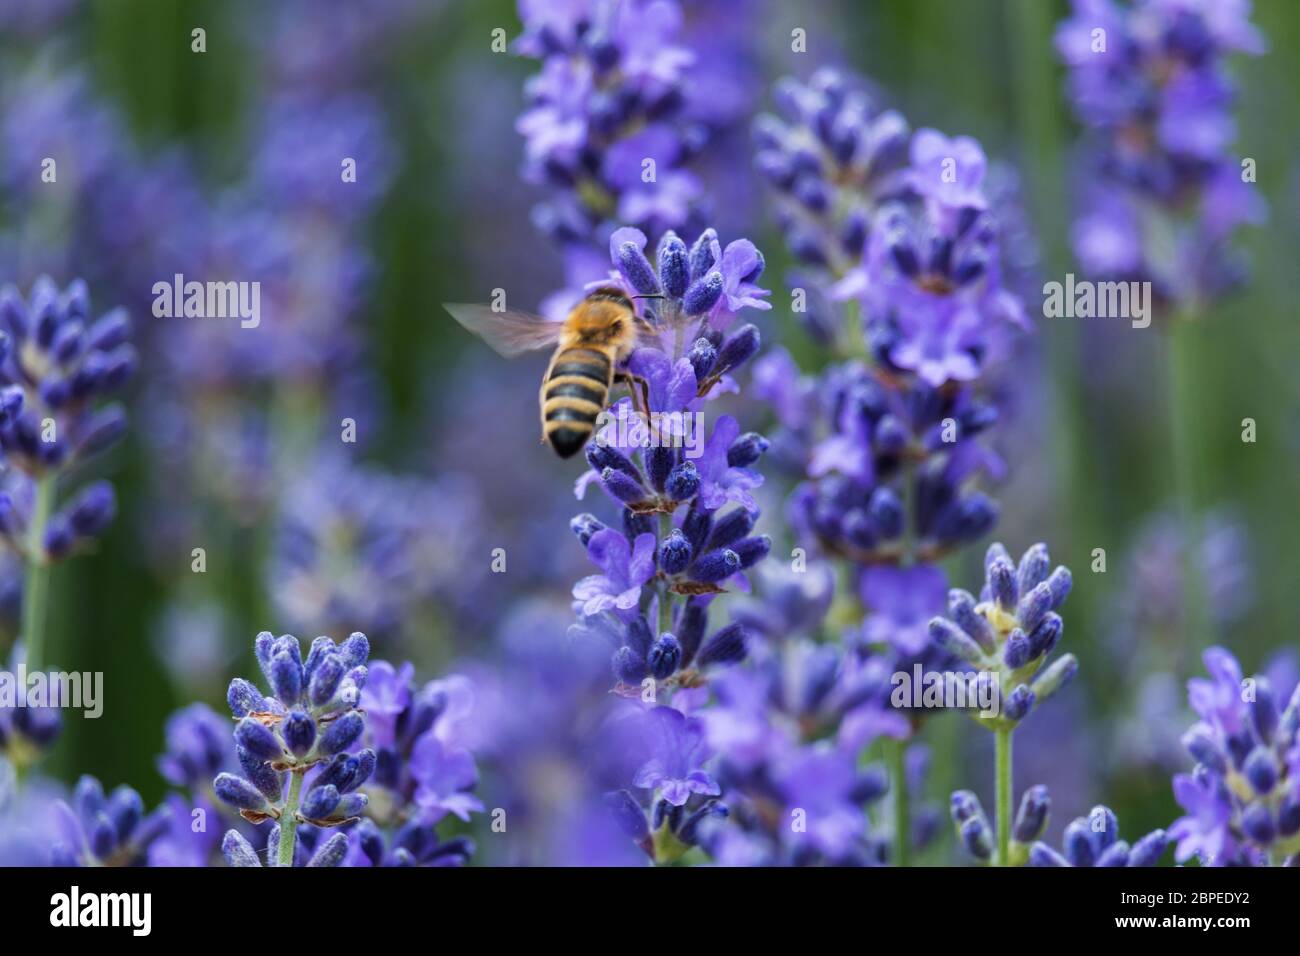 Lavendel mit Biene, Nahaufnahme der duftenden blauen Pflanze mit Insekt Stock Photo